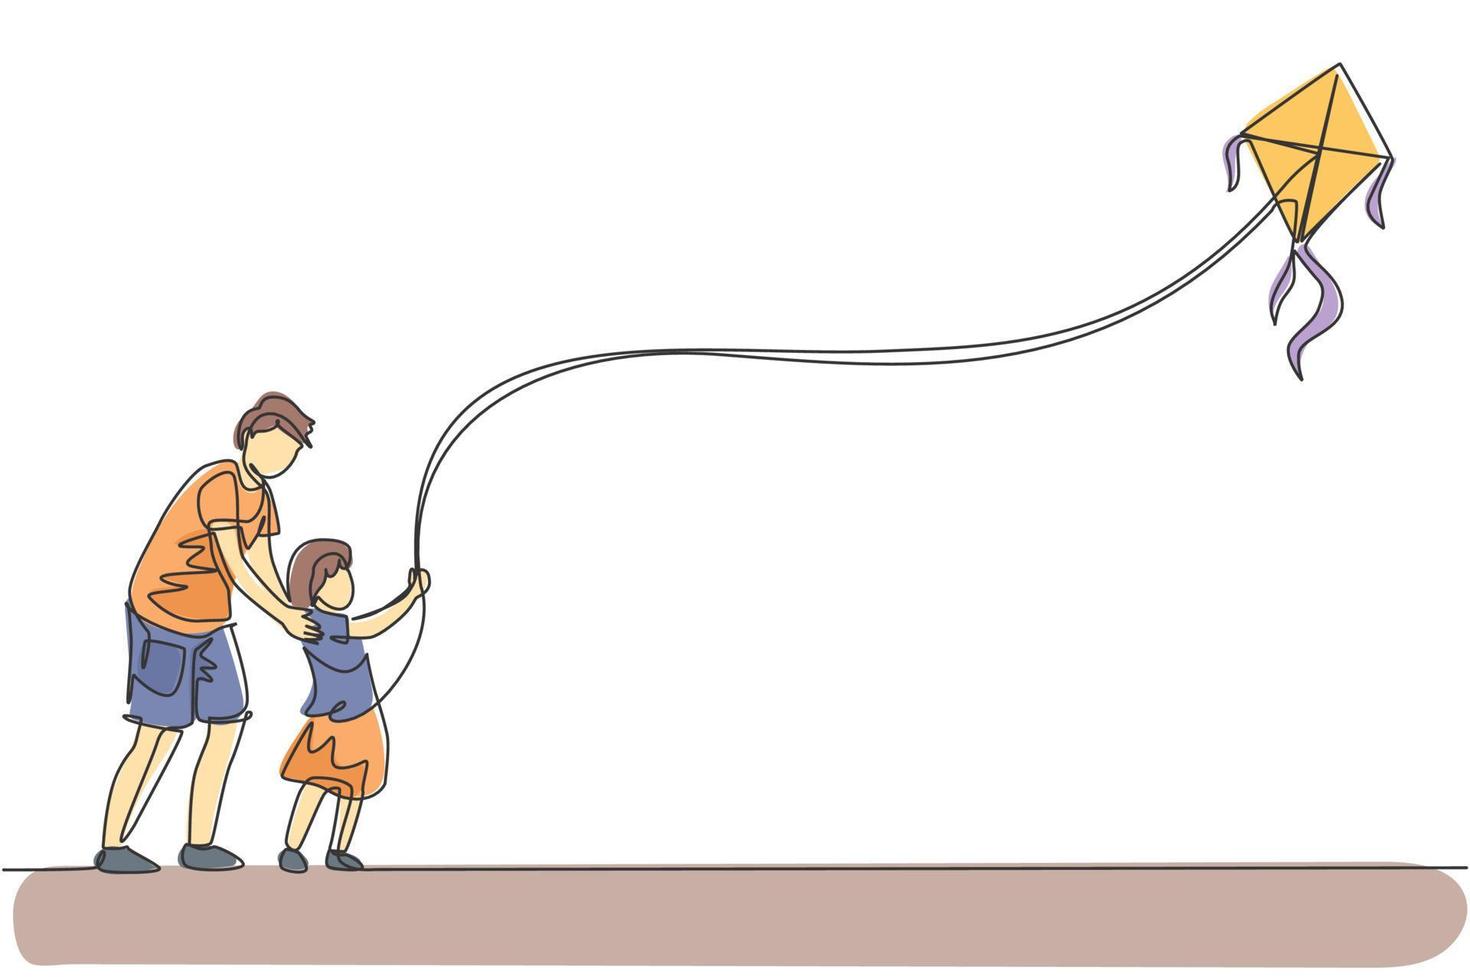 en enda radritning av ung pappa och hans dotter som leker för att flyga drake upp i himlen på utomhusfältet vektor illustration. lycklig familj bonding koncept. modern kontinuerlig linje grafisk ritdesign